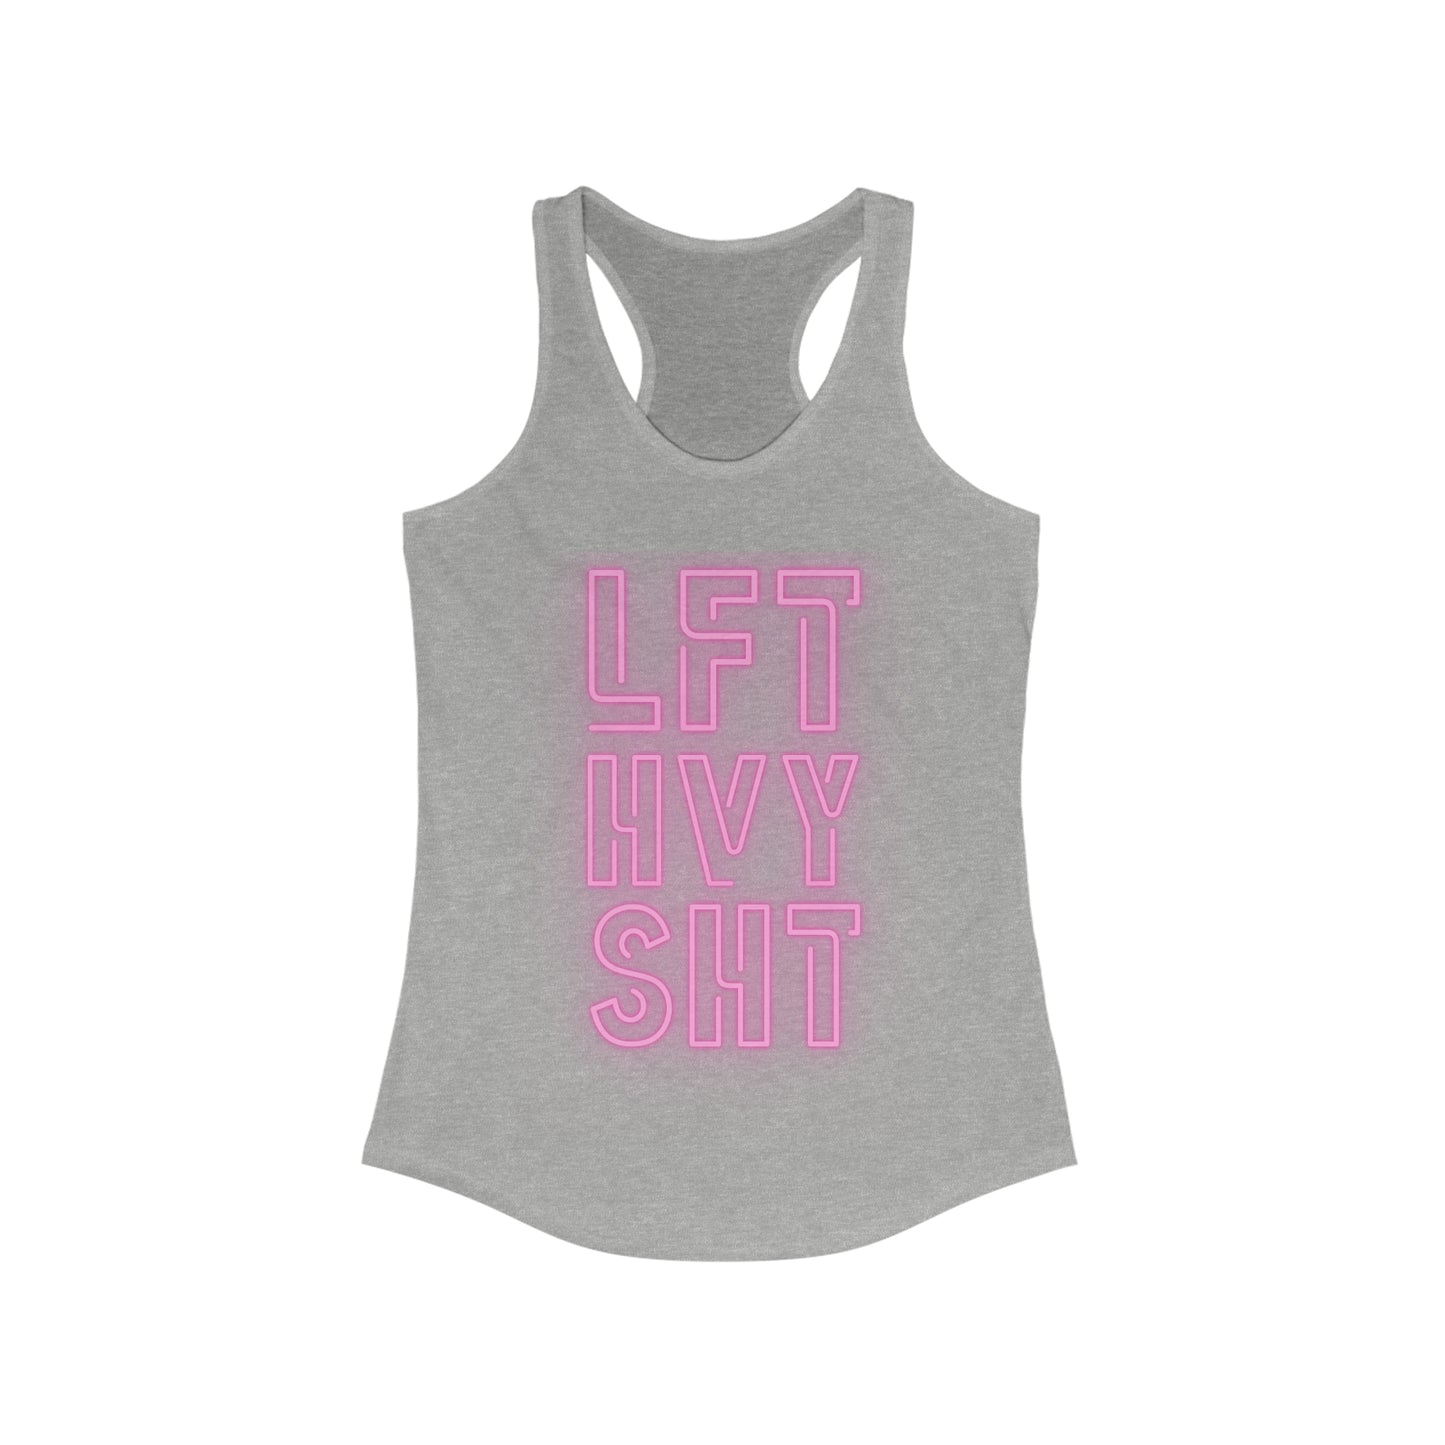 LFT HVY SHT Women's workout Tank Top